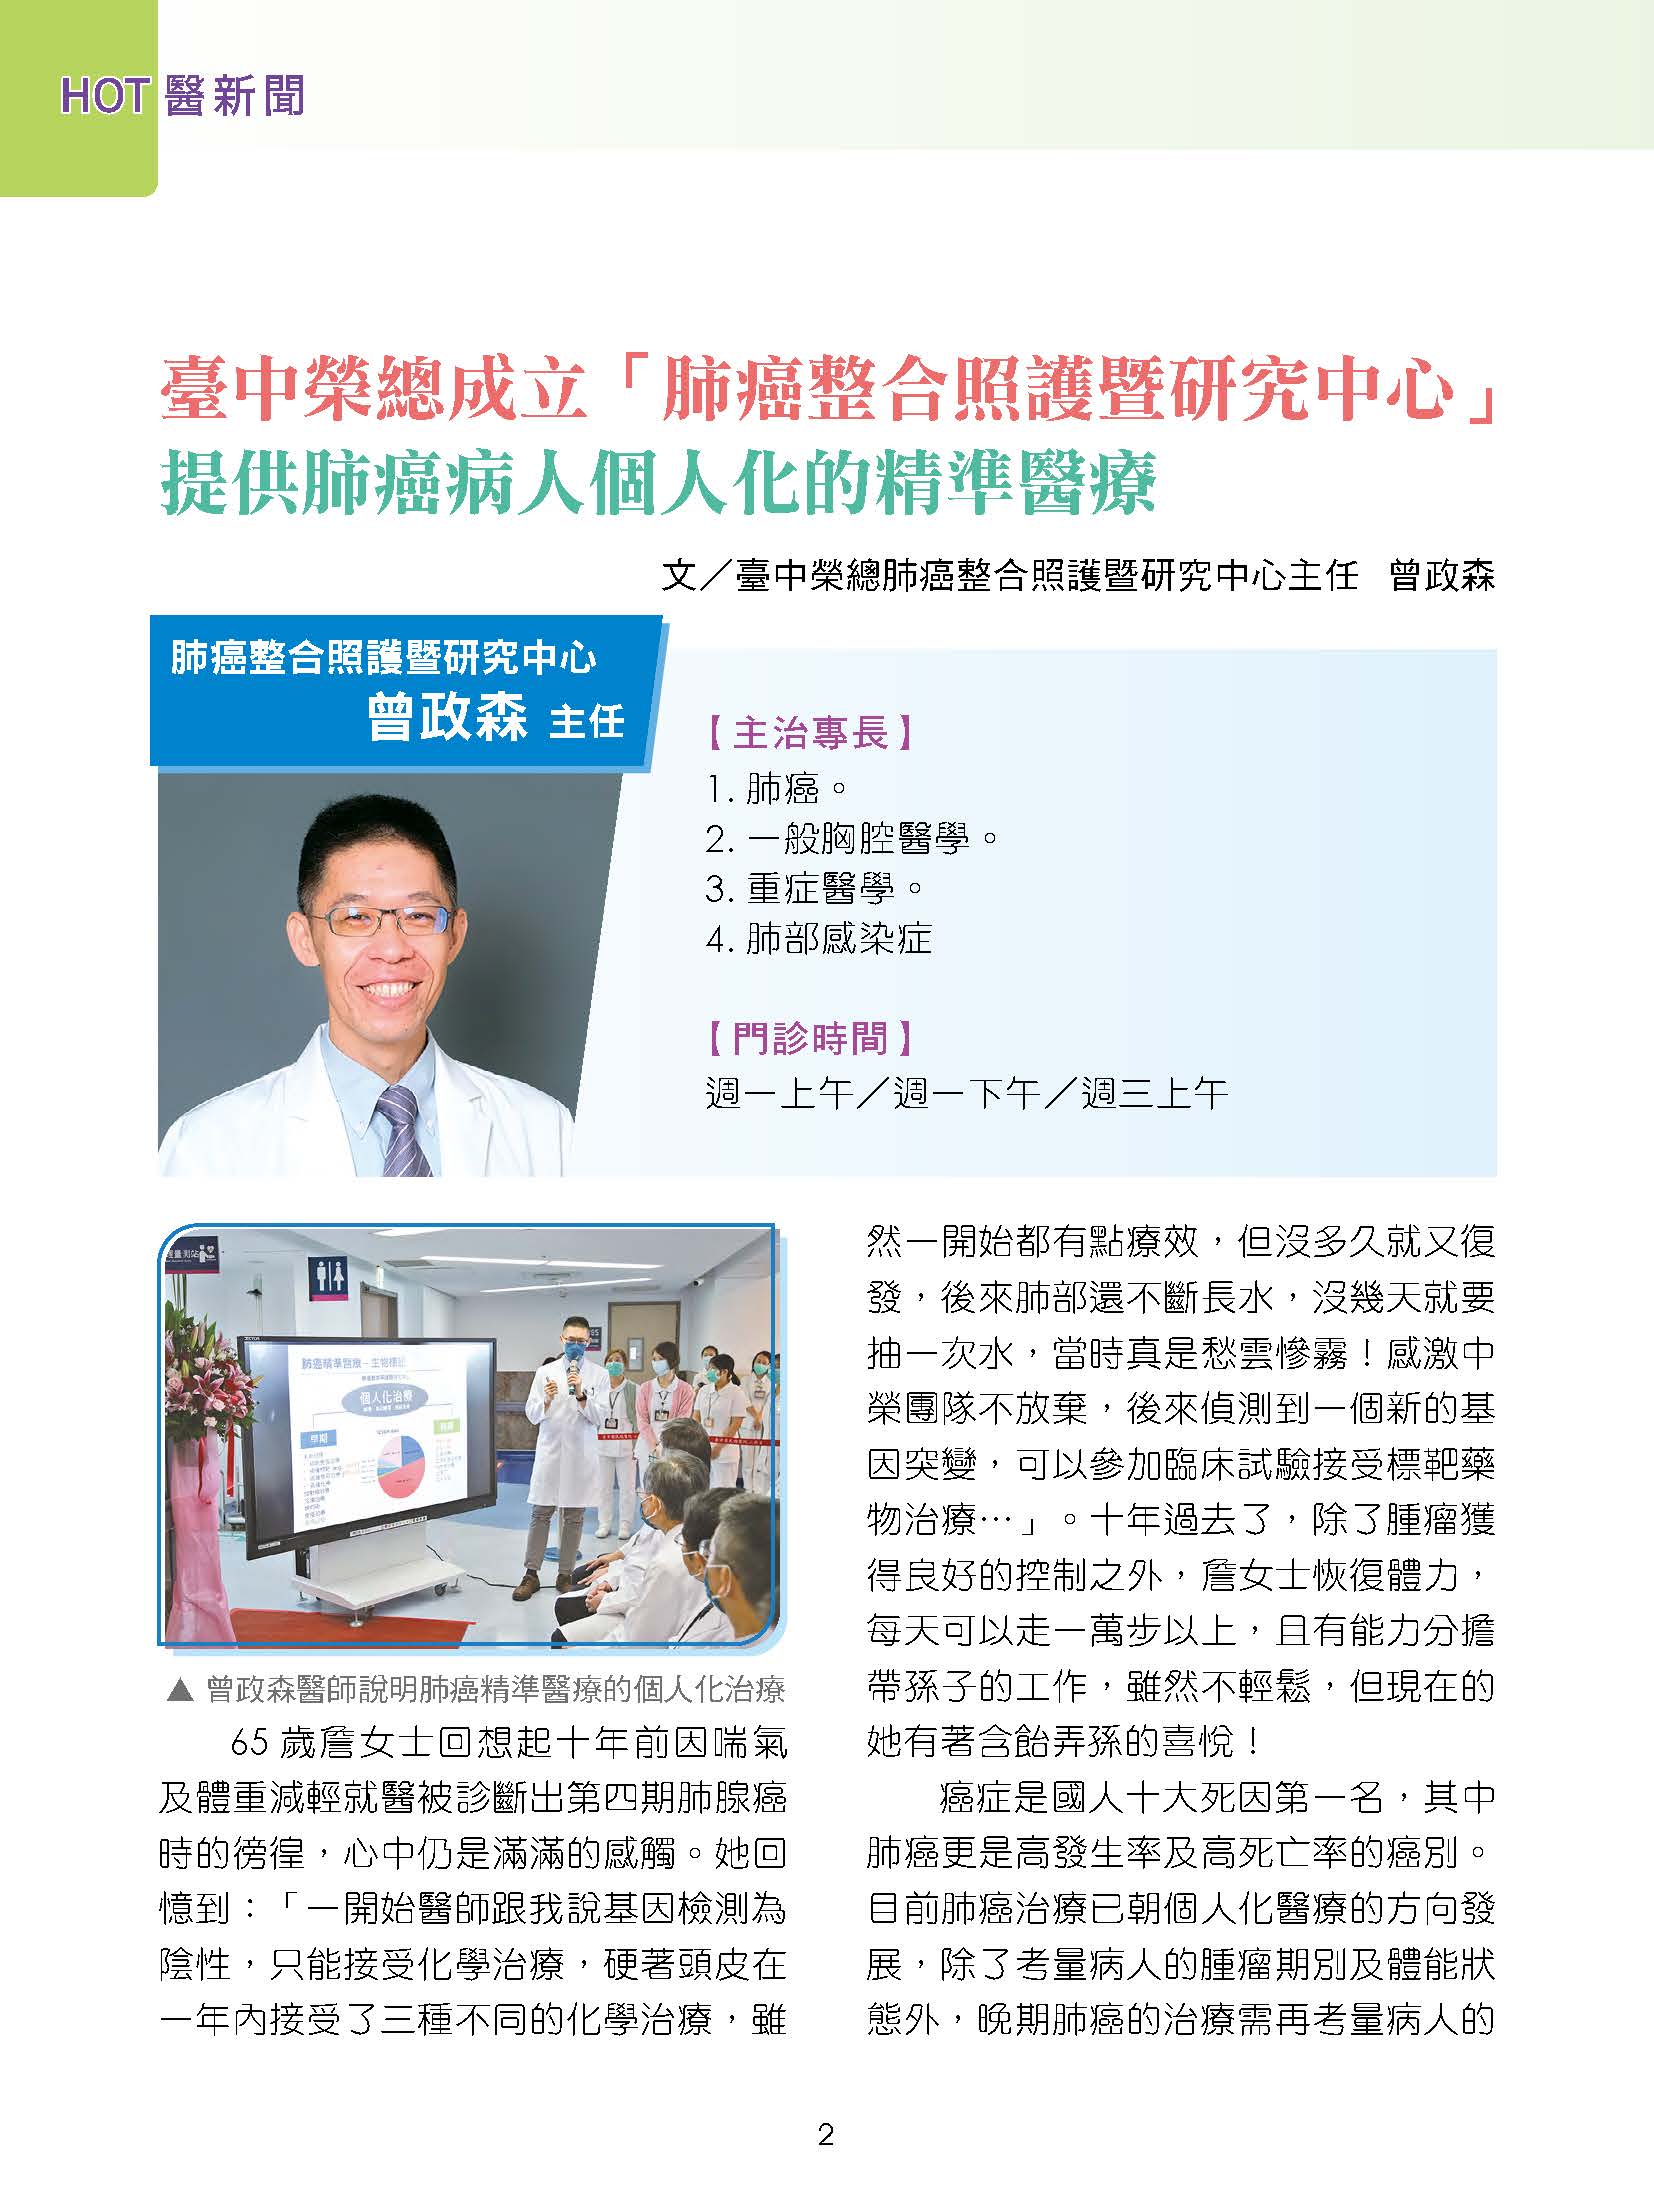 臺中榮總成立「肺癌整合照護暨研究中心」 提供肺癌病人個人化的精準醫療